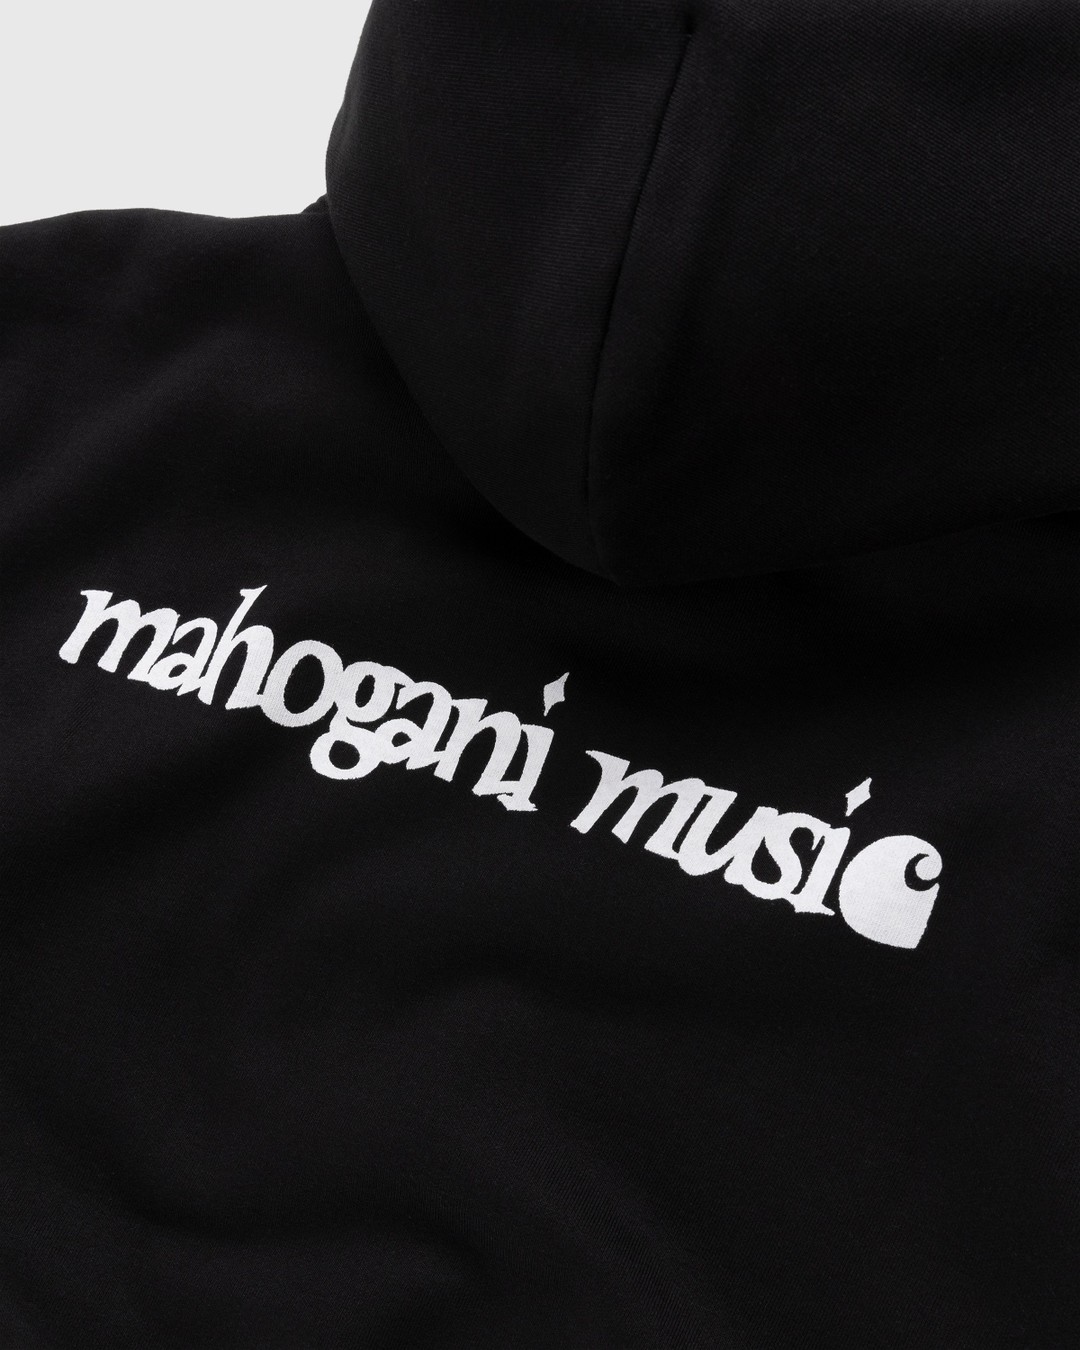 Carhartt WIP – Mahogani Music Hoodie Black/White - Hoodies - Black - Image 3